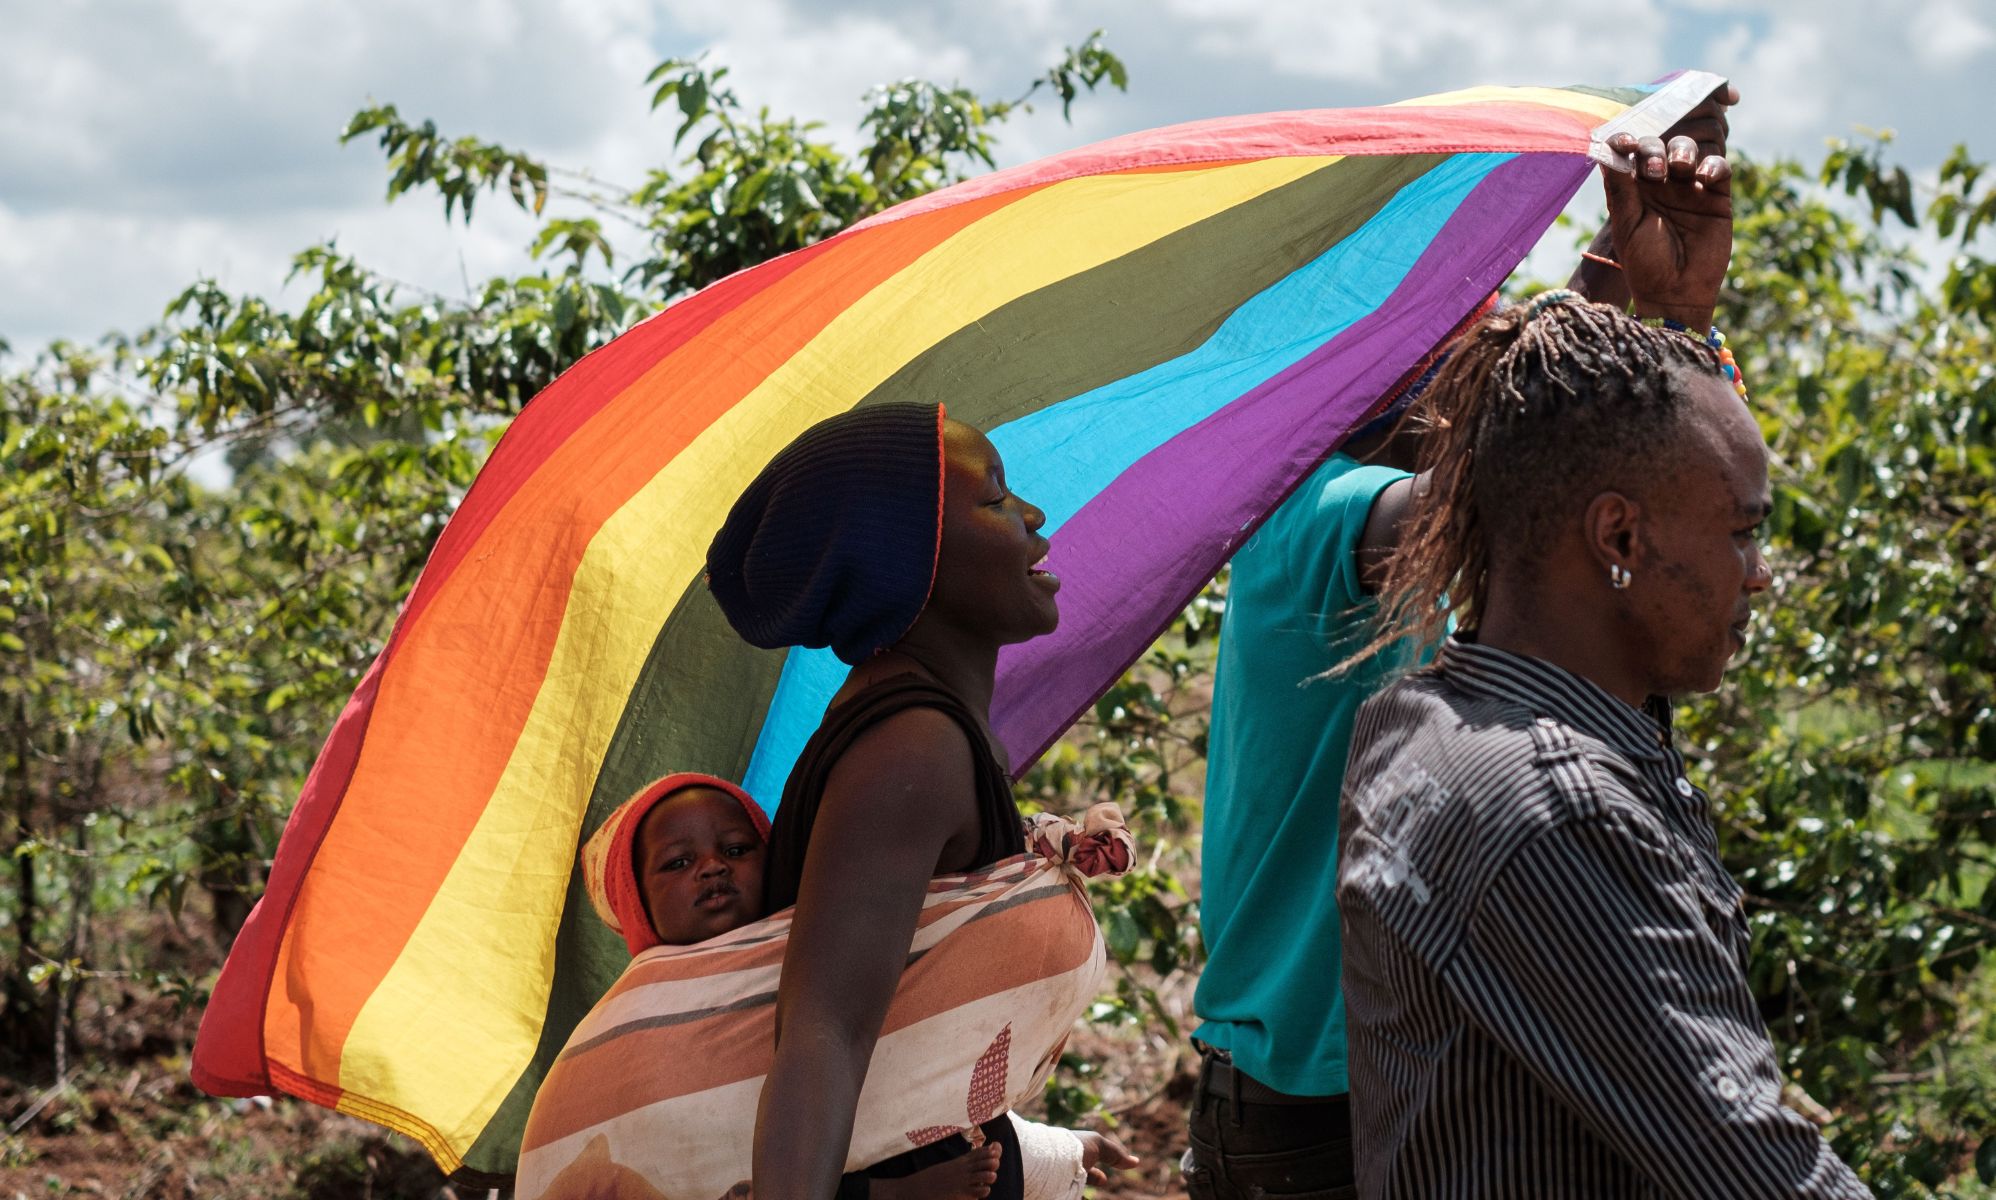 Deportarán a un hombre homosexual a Uganda tras denegarle el estatuto de refugiado: "Me he quedado sin opciones